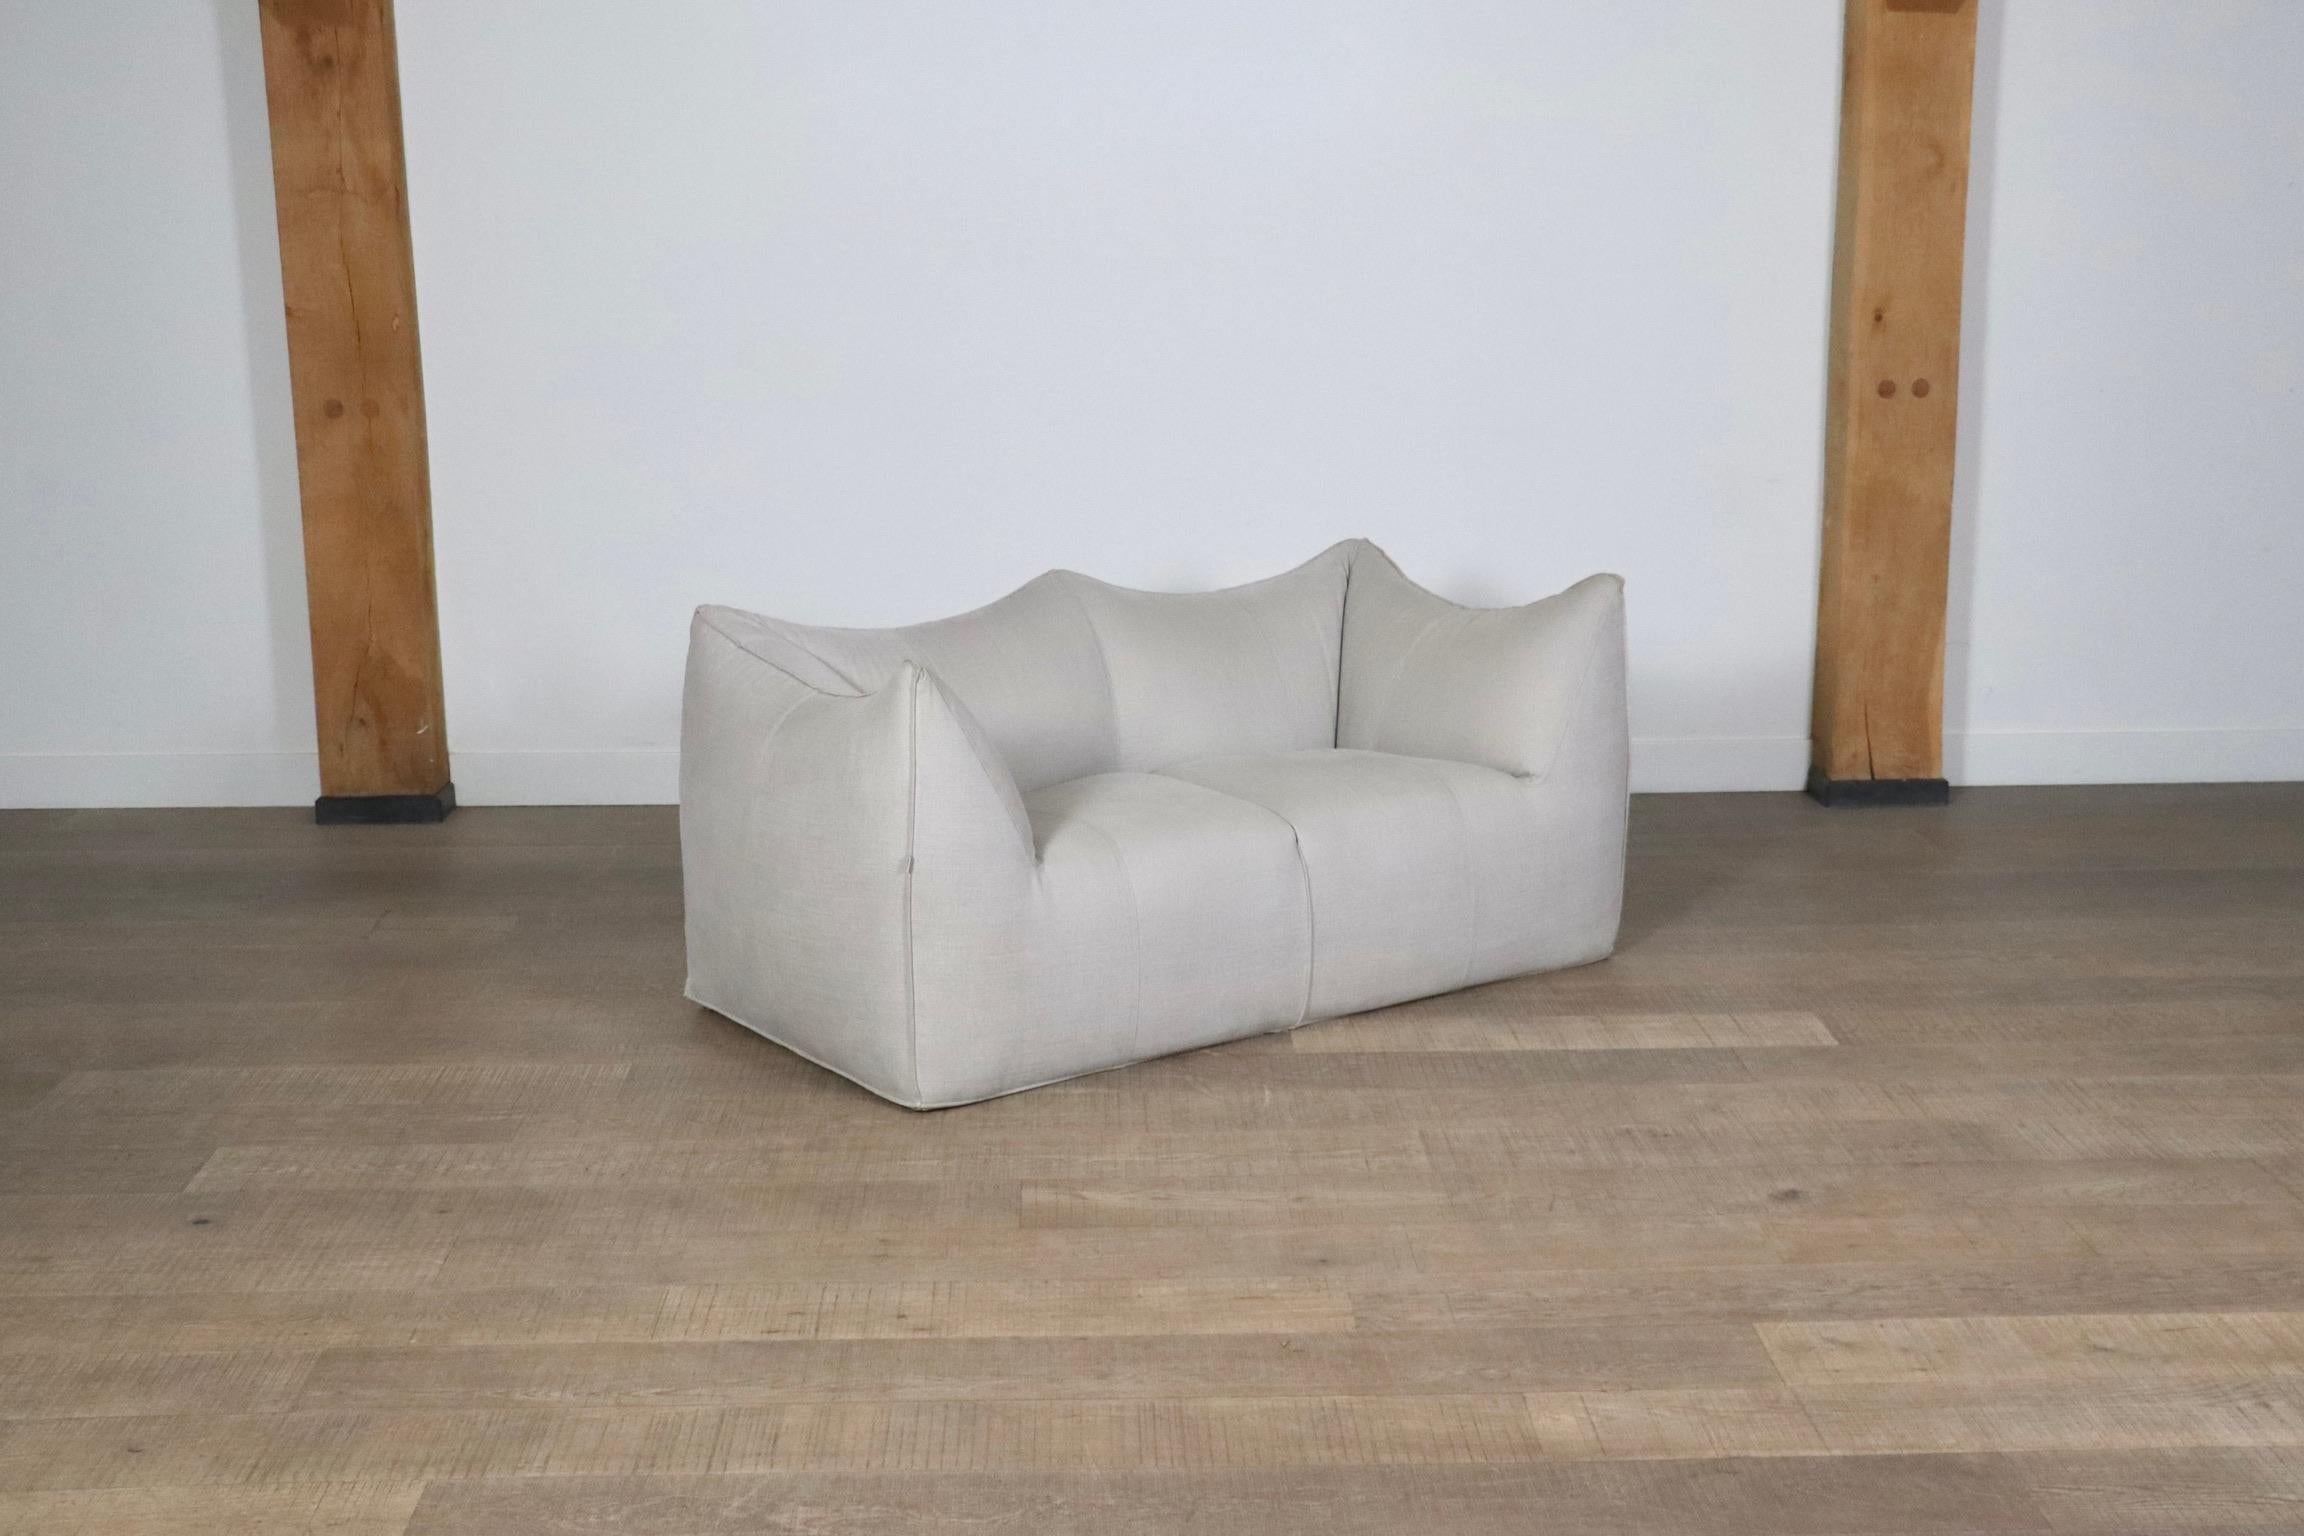 Late 20th Century Le Bambole Sofa In Off White Linen By Mario Bellini For B&B Italia, 1970s For Sale